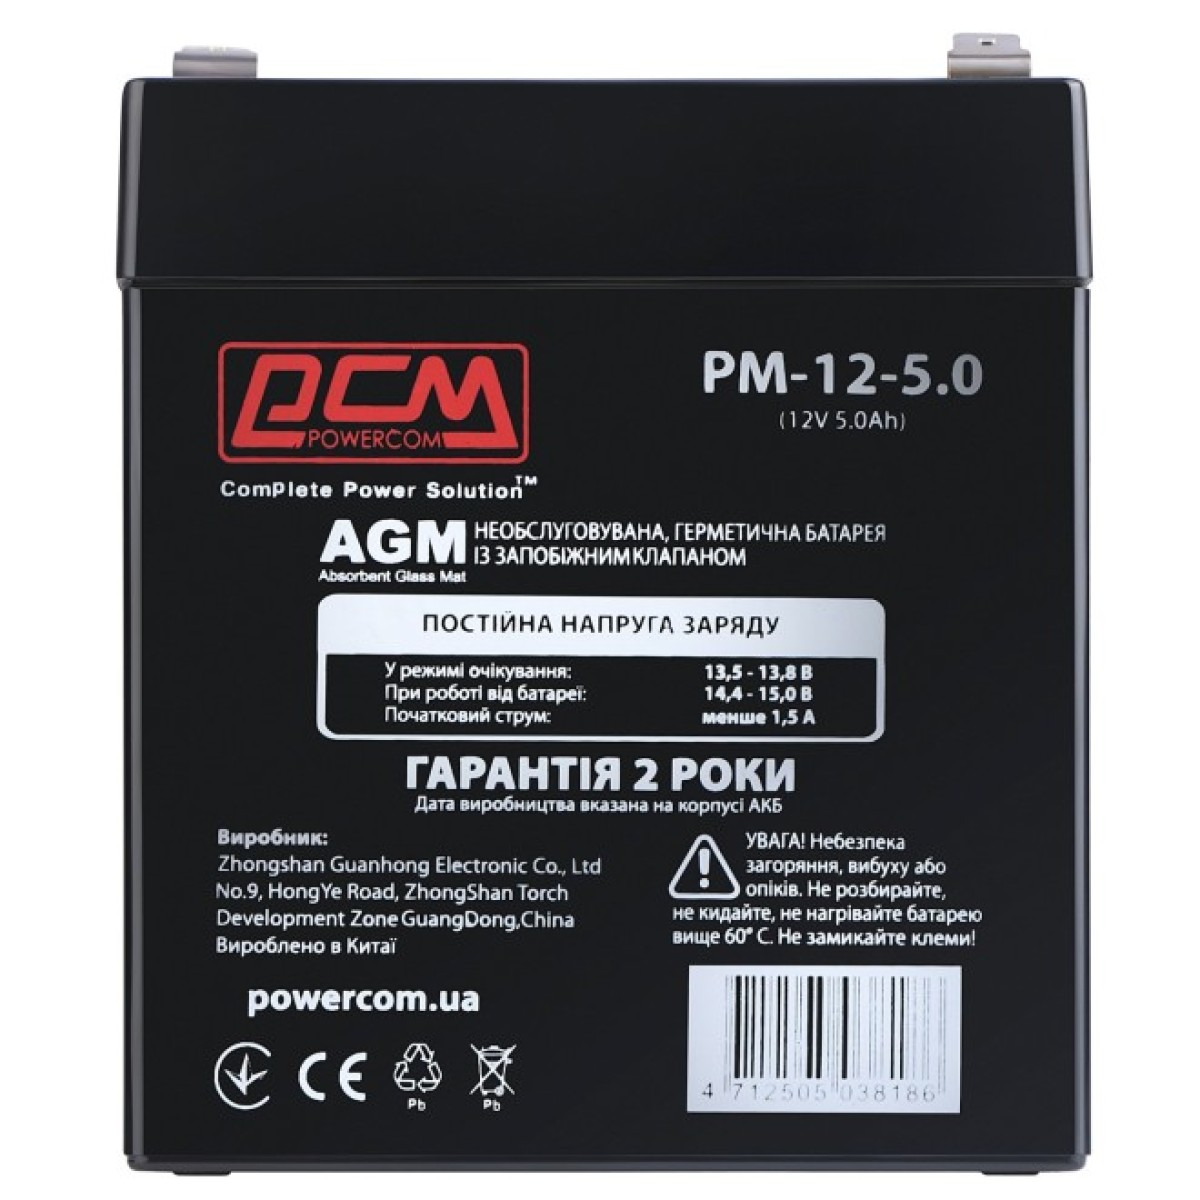 Батарея к ИБП Powercom PM-12-5.0, 12V 5Ah (PM-12-5.0) 98_98.jpg - фото 1